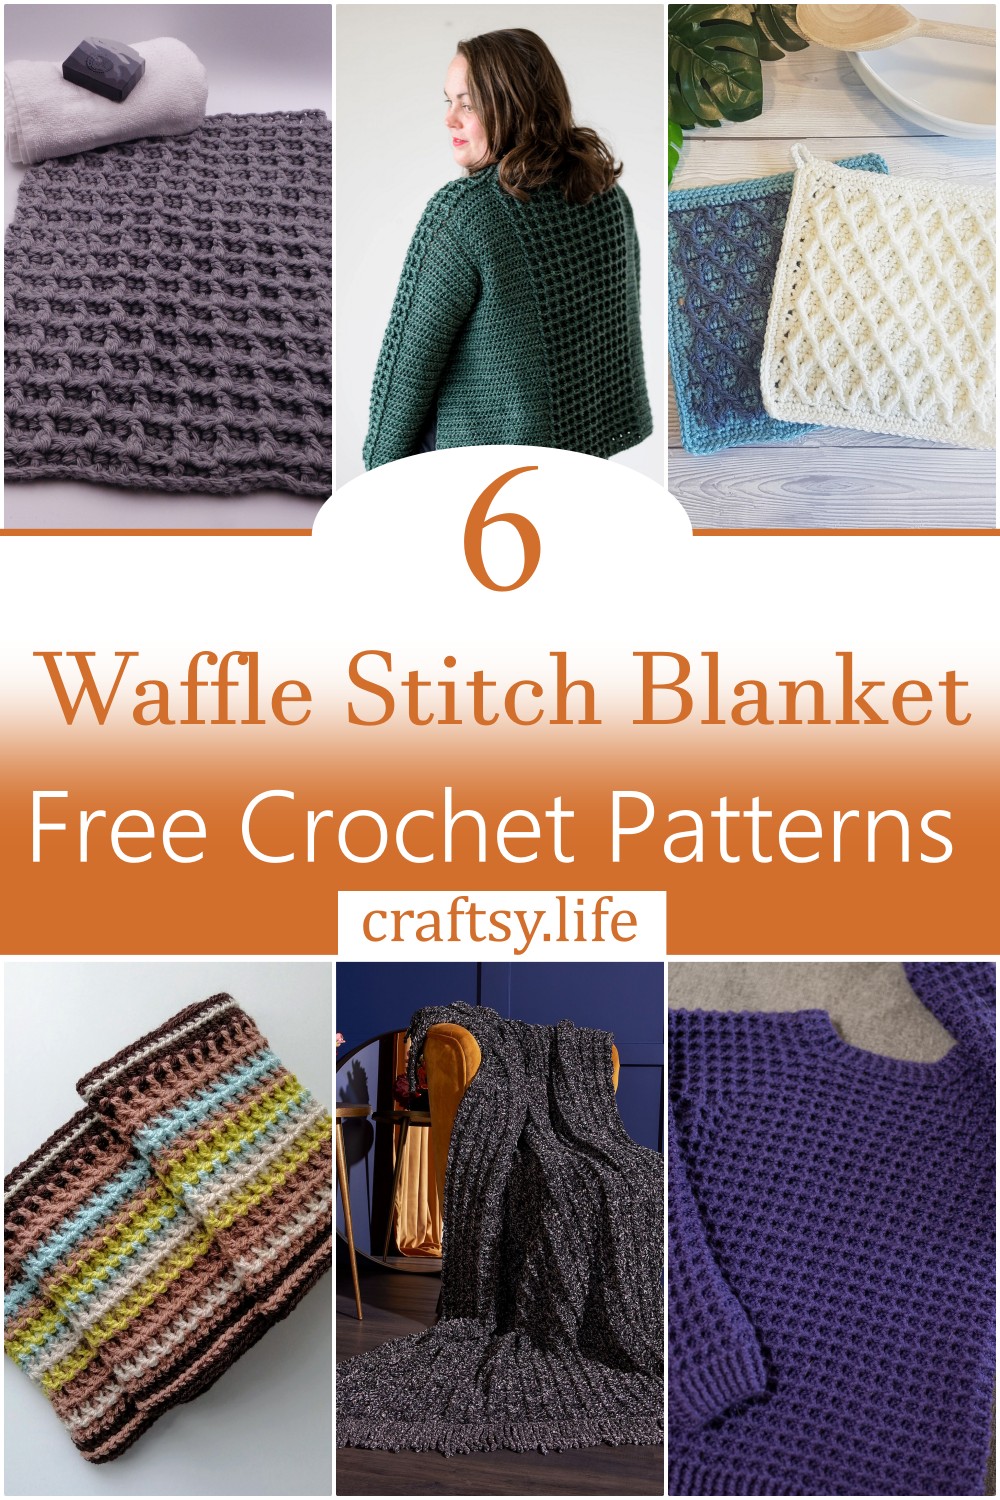 Crochet Waffle Stitch Blanket Free Patterns 1